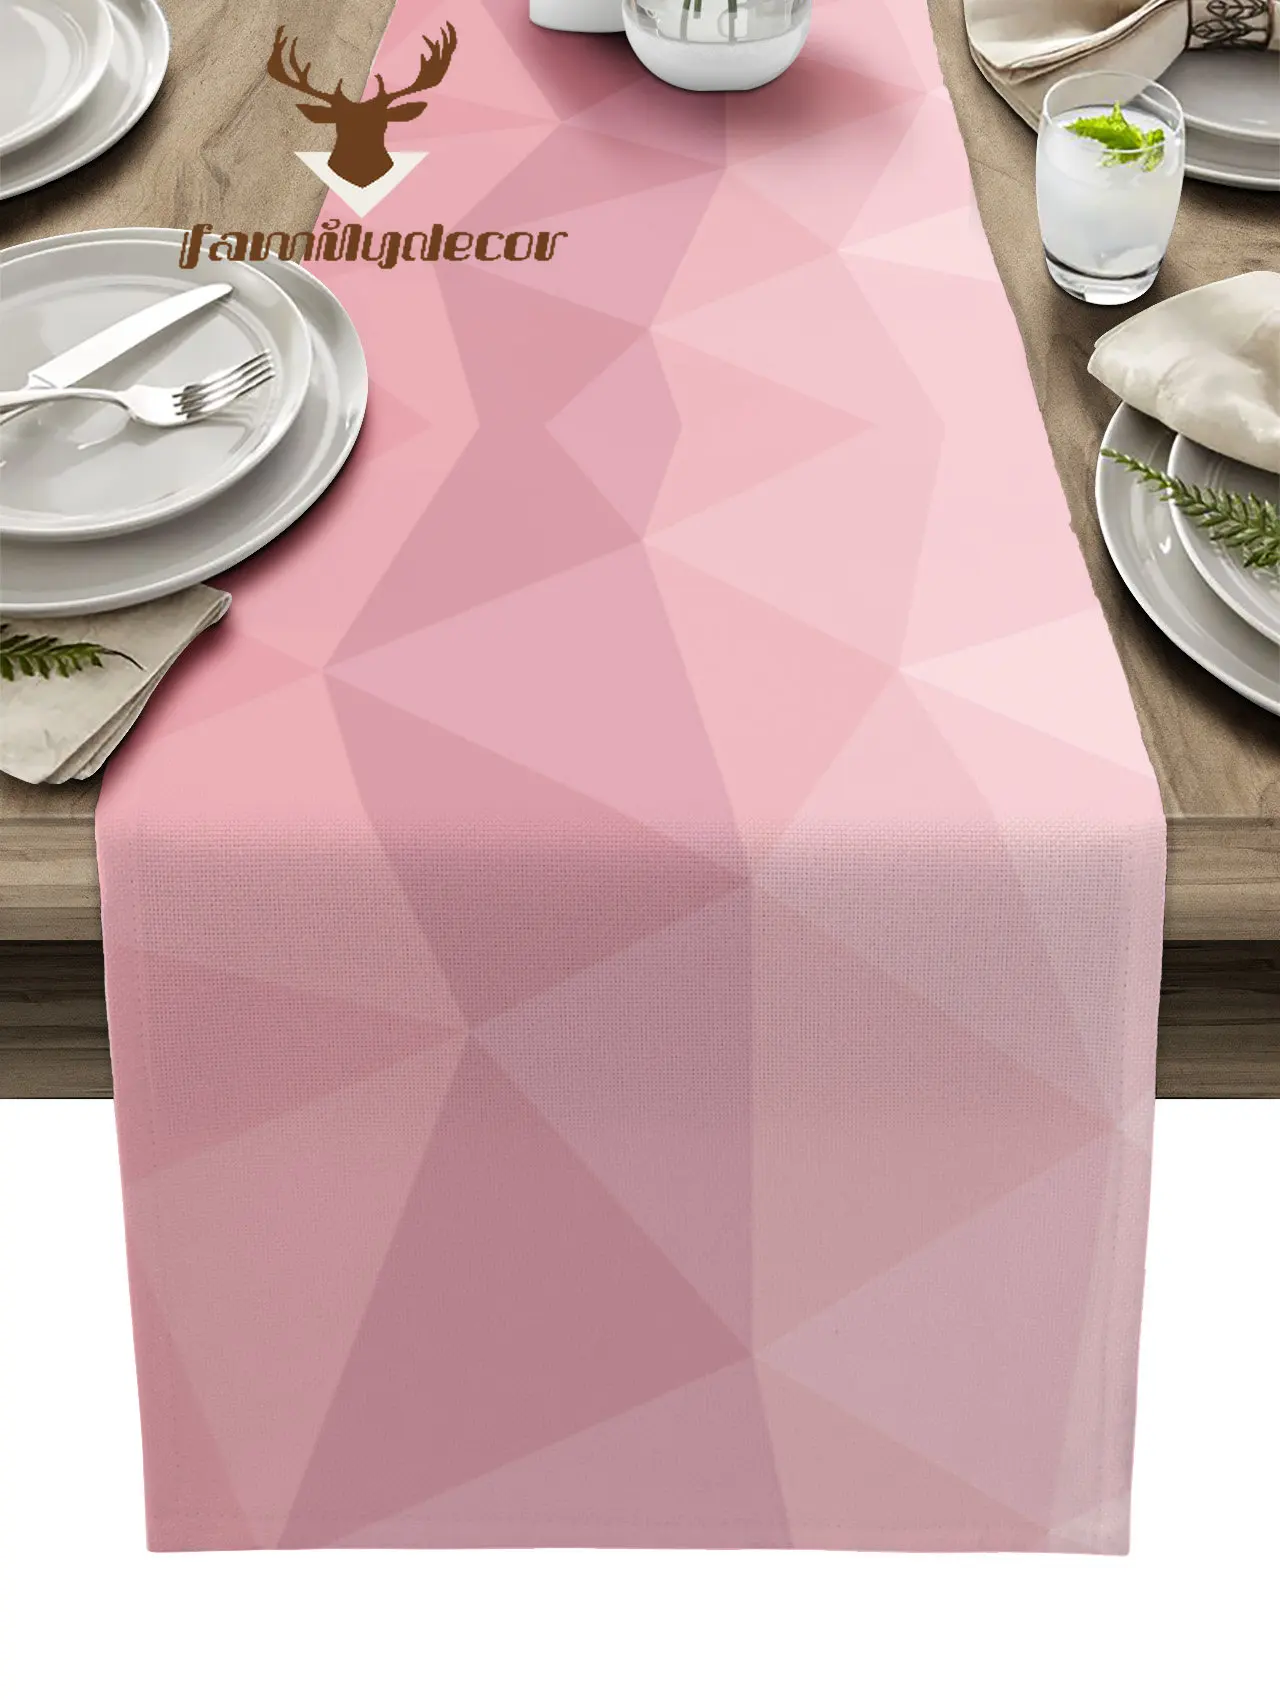 Camino de mesa de rosa rosa gris, mantel de mesa triangular